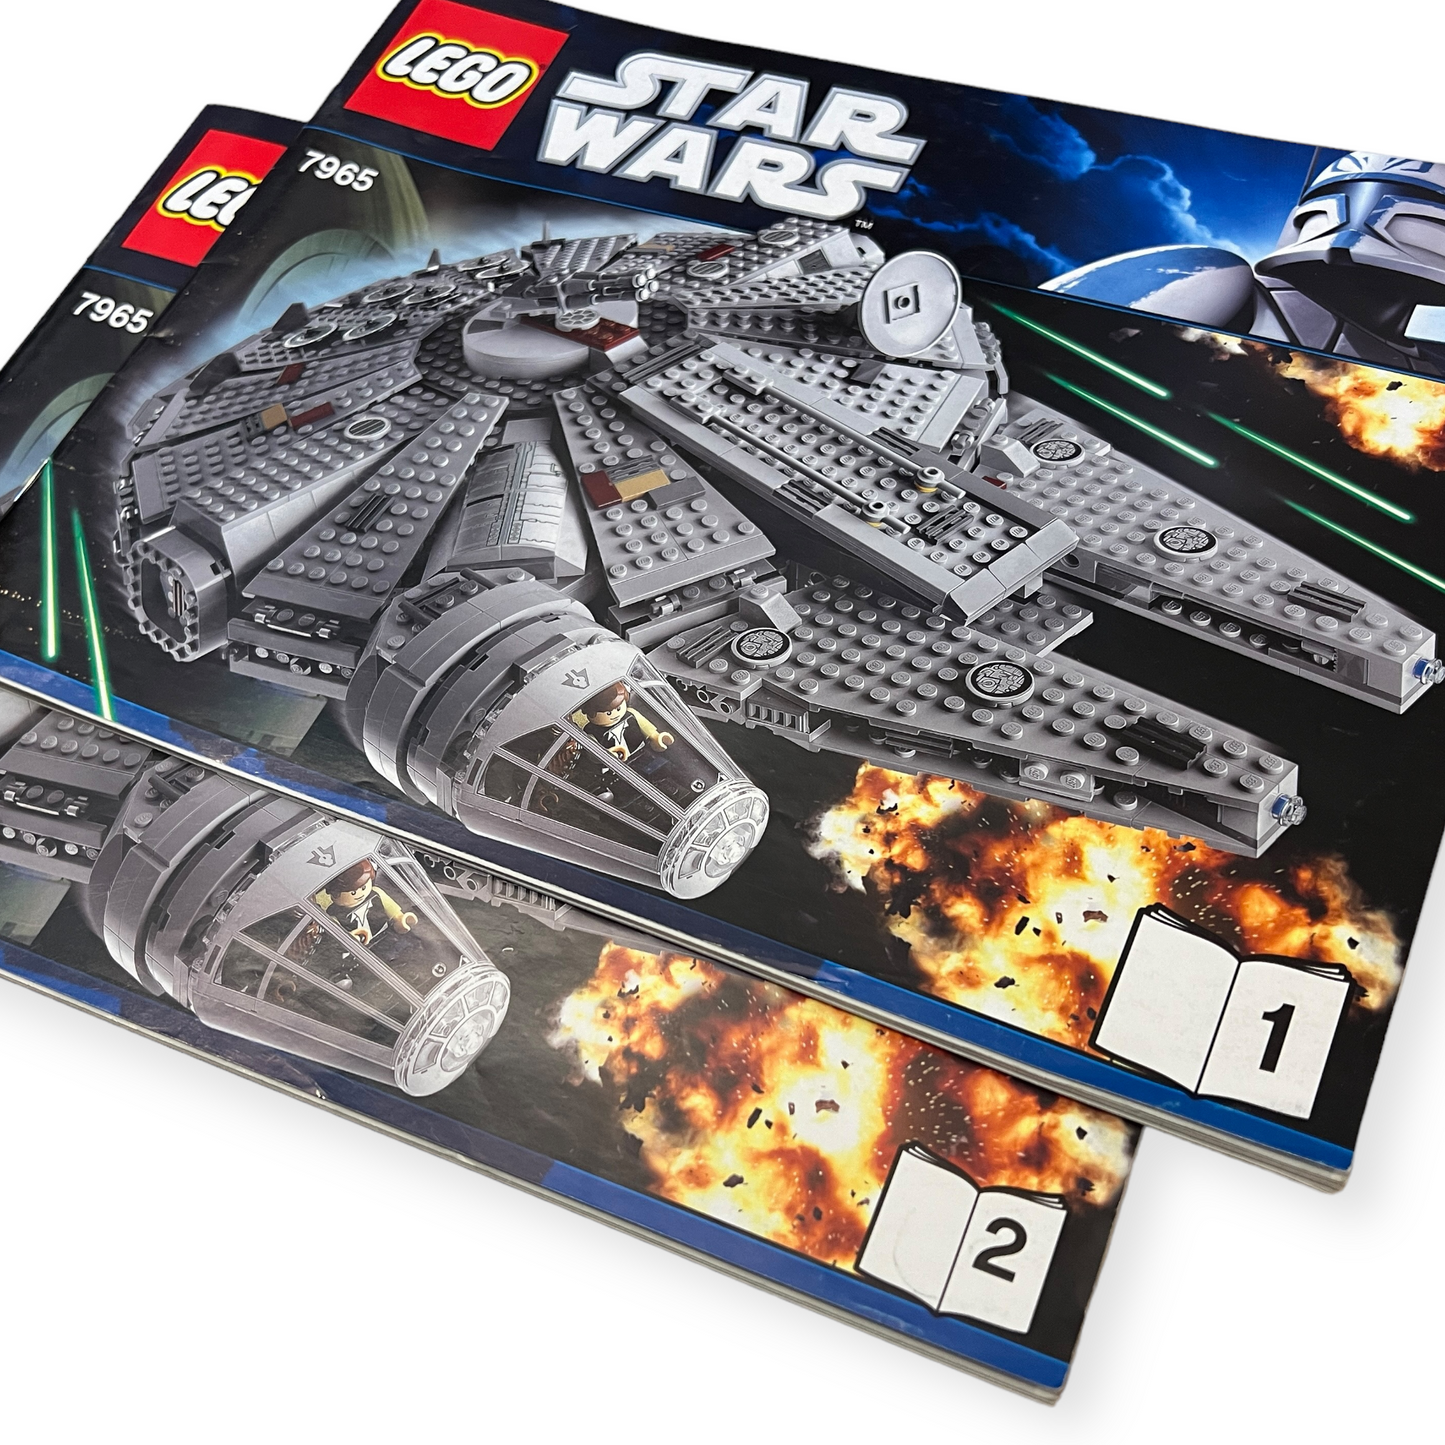 LEGO Star Wars 7965 - Millennium Falcon